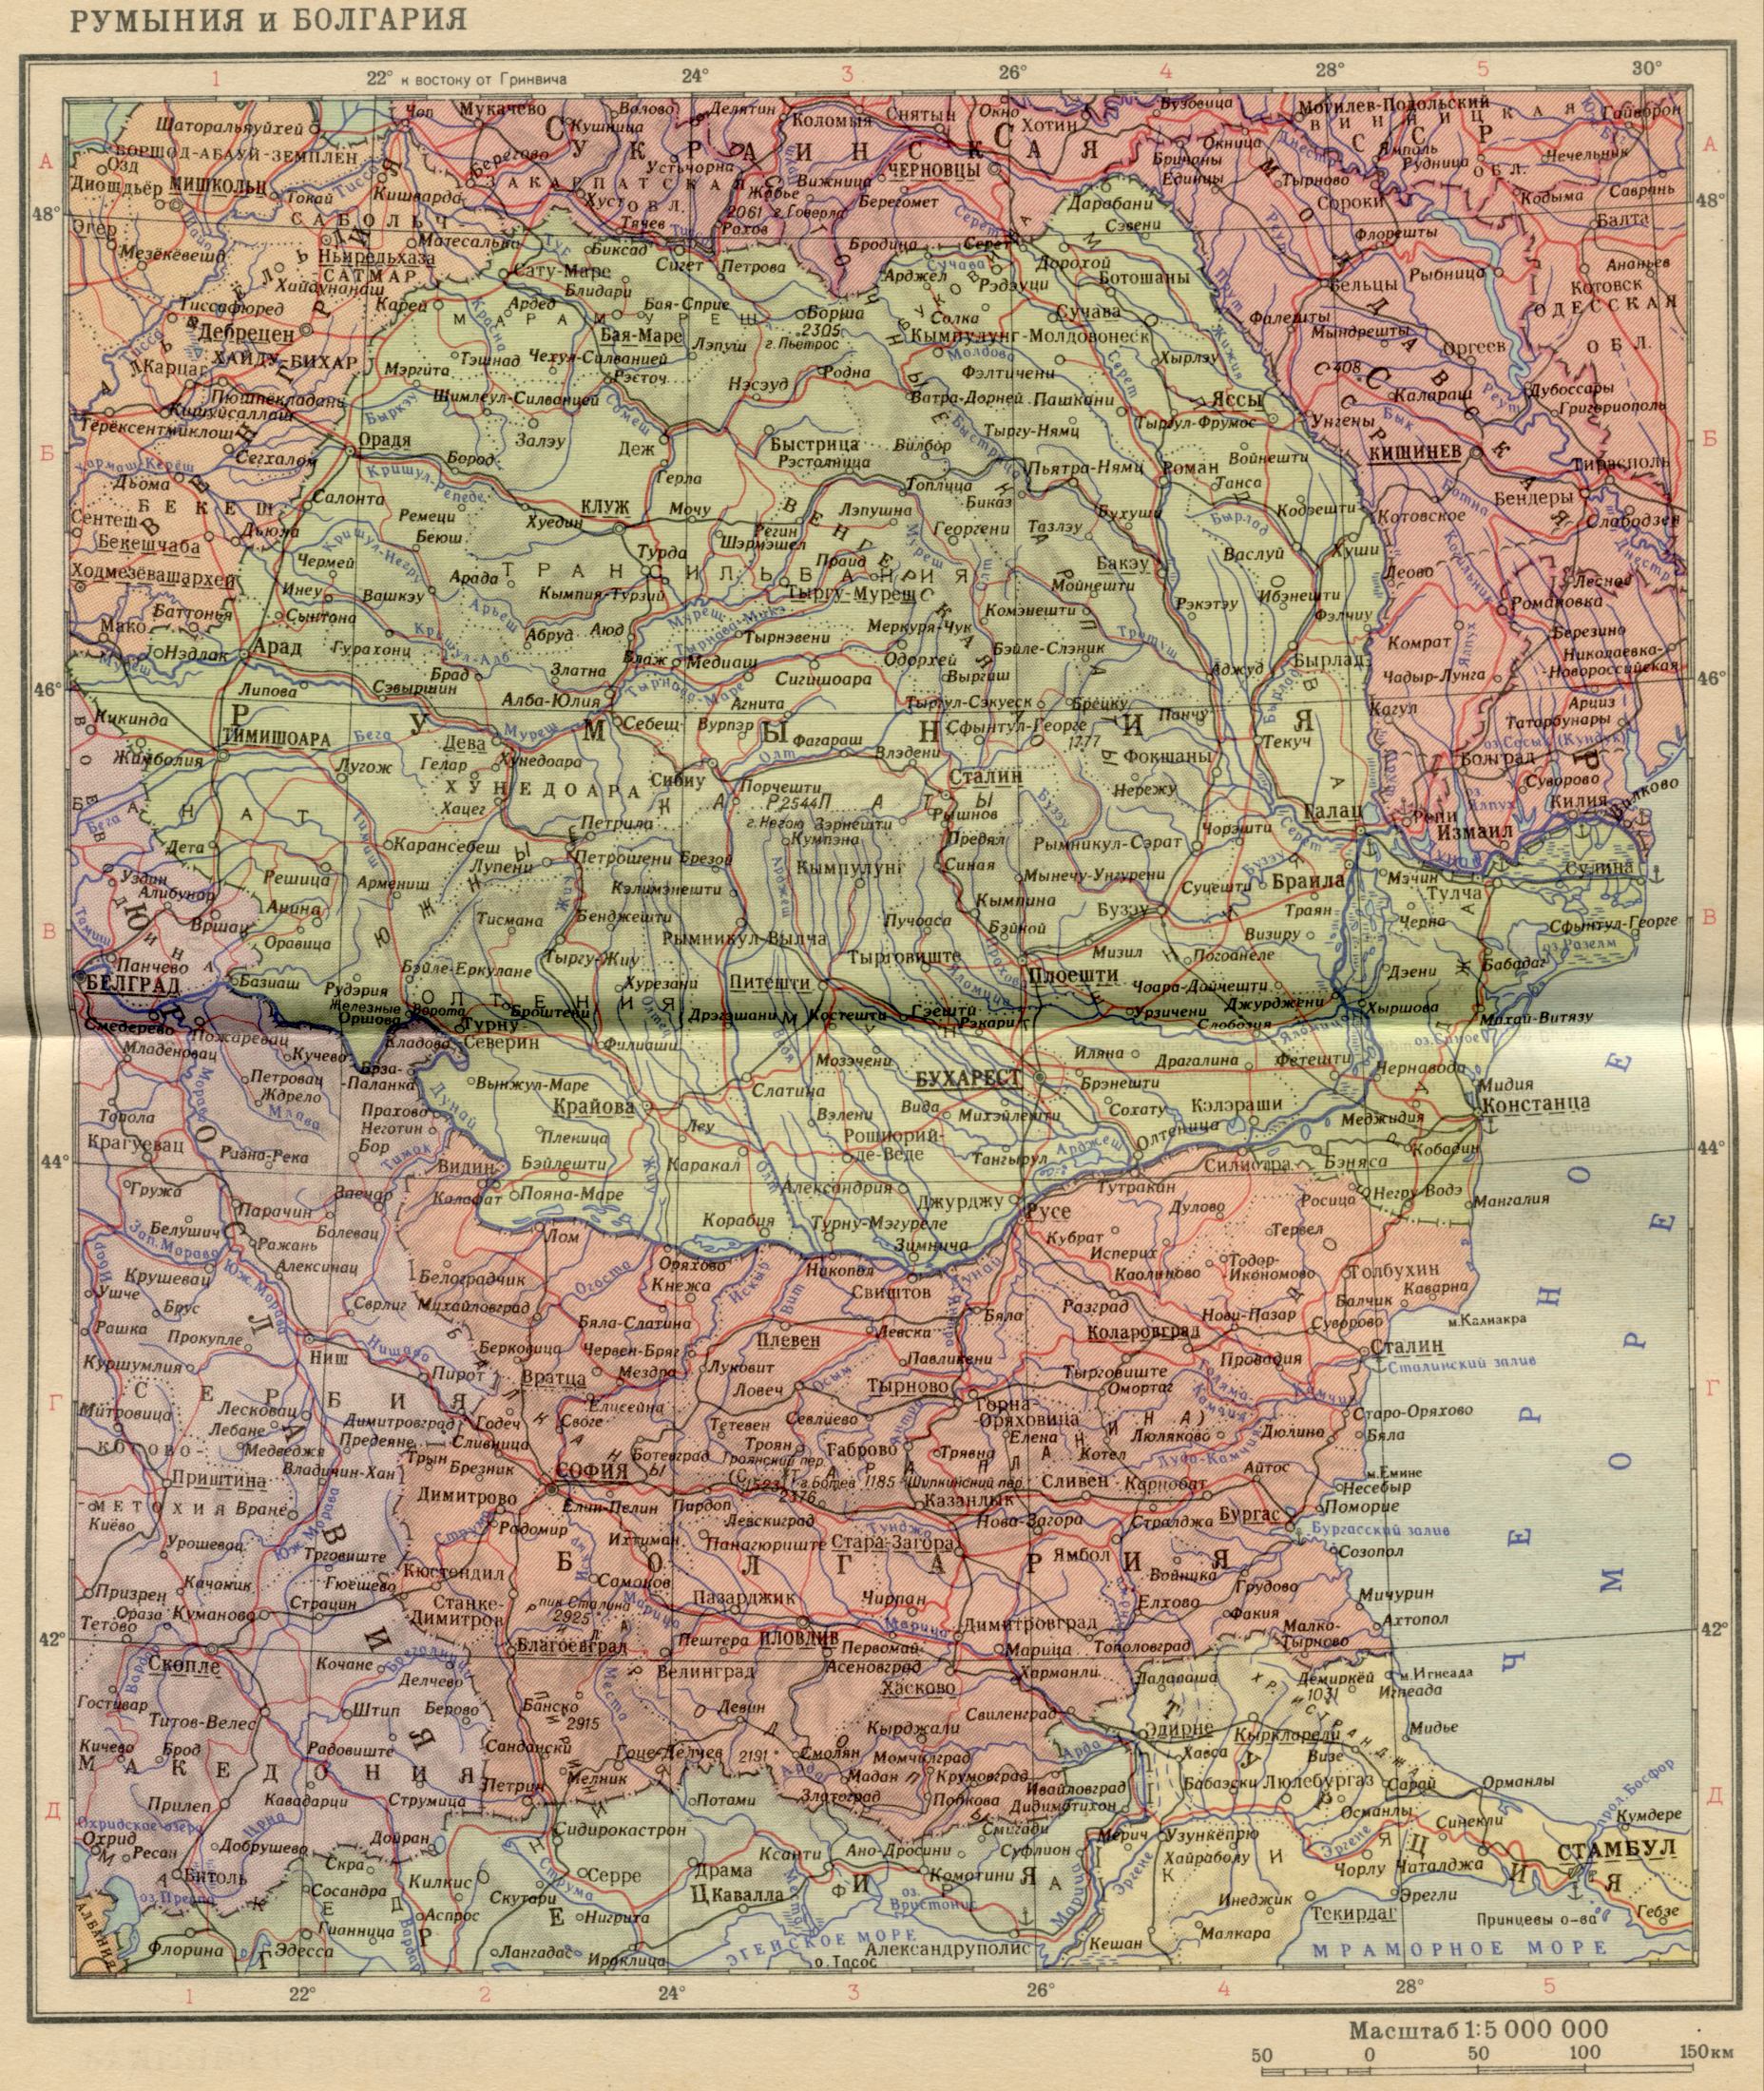 1956. Die politische Landkarte der Welt - Rumänien und Bulgarien im Jahr 1956. Laden Sie eine detaillierte Karte der Donau